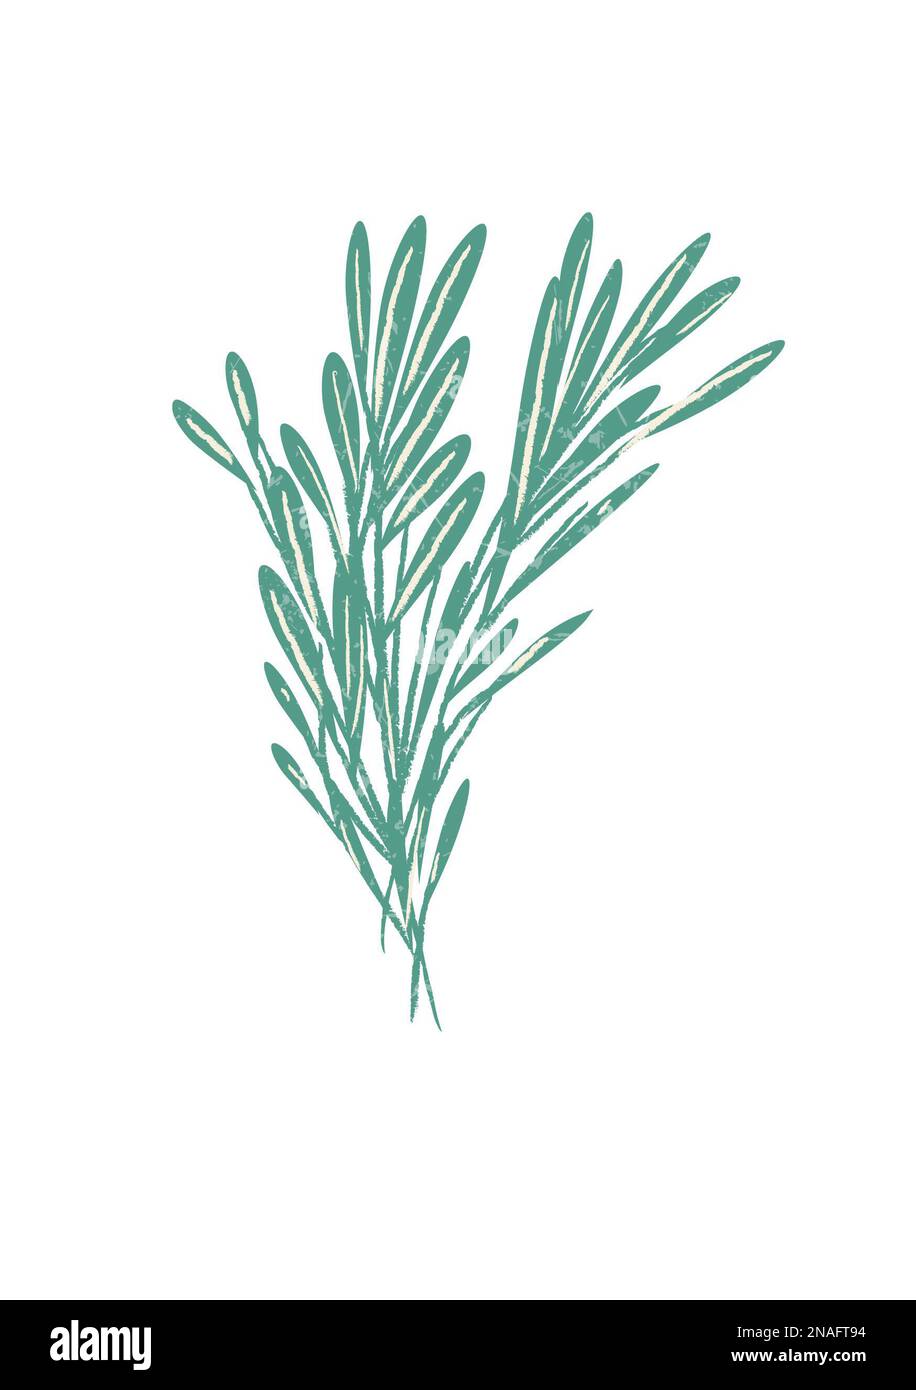 Menopausa naturale mano disegnata illustrazione rimedi a base di erbe sana alimentazione Foto Stock